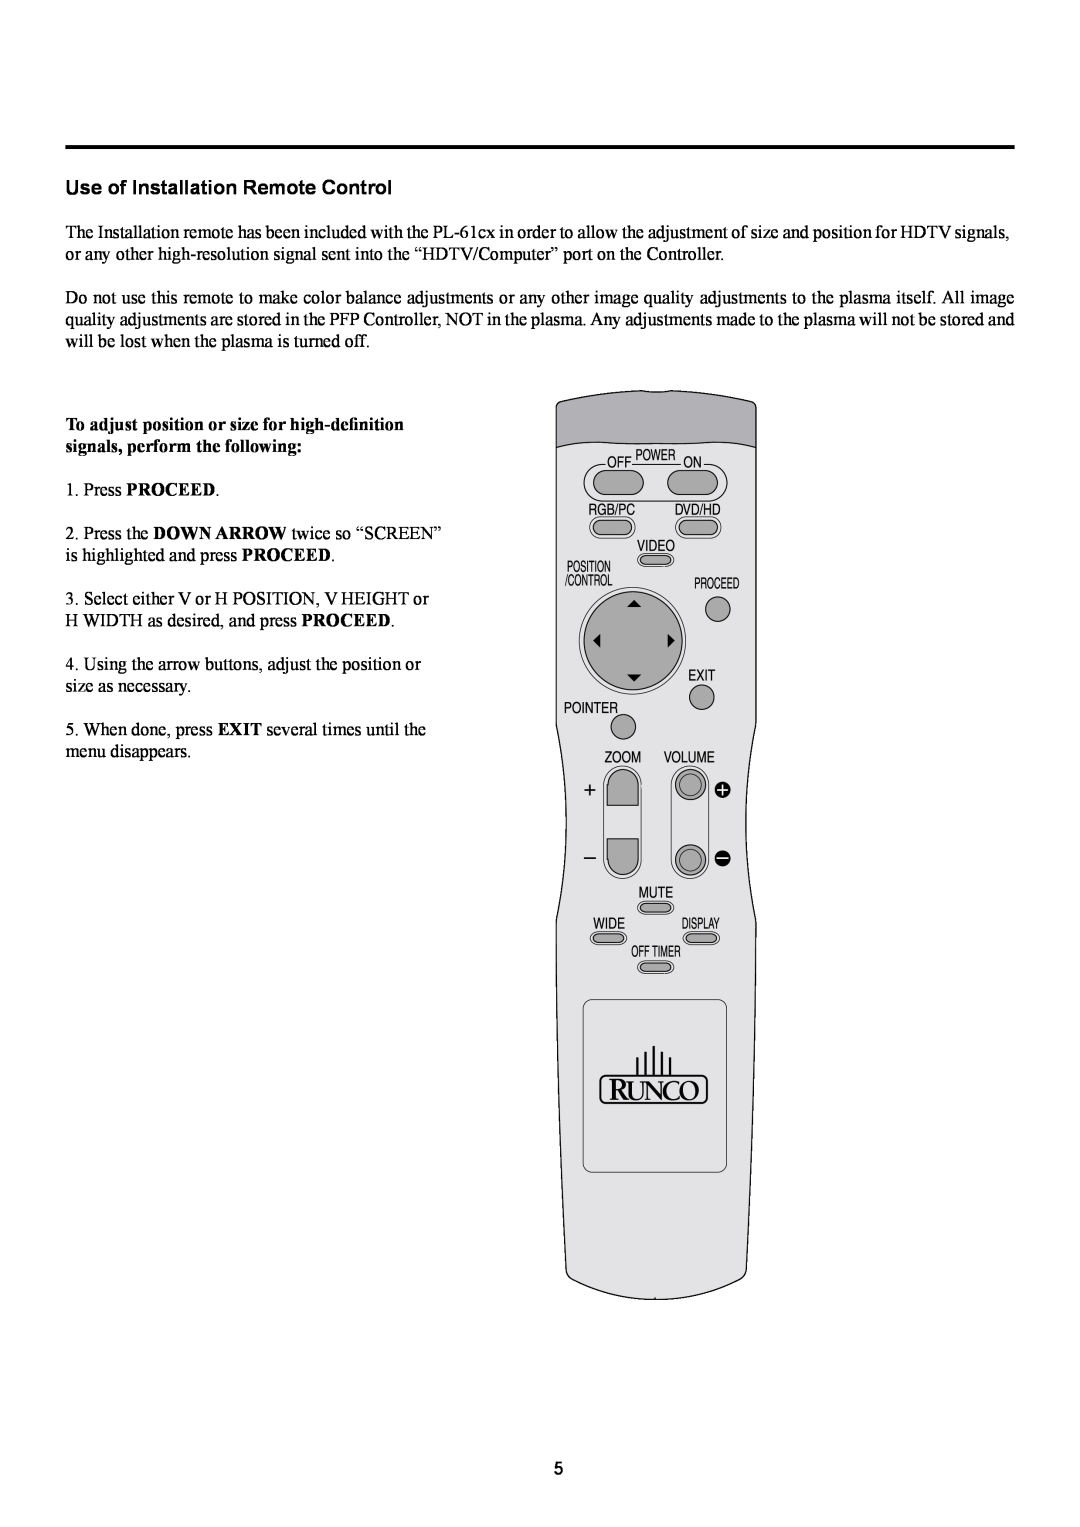 Runco PL-61CX manual Use of Installation Remote Control 